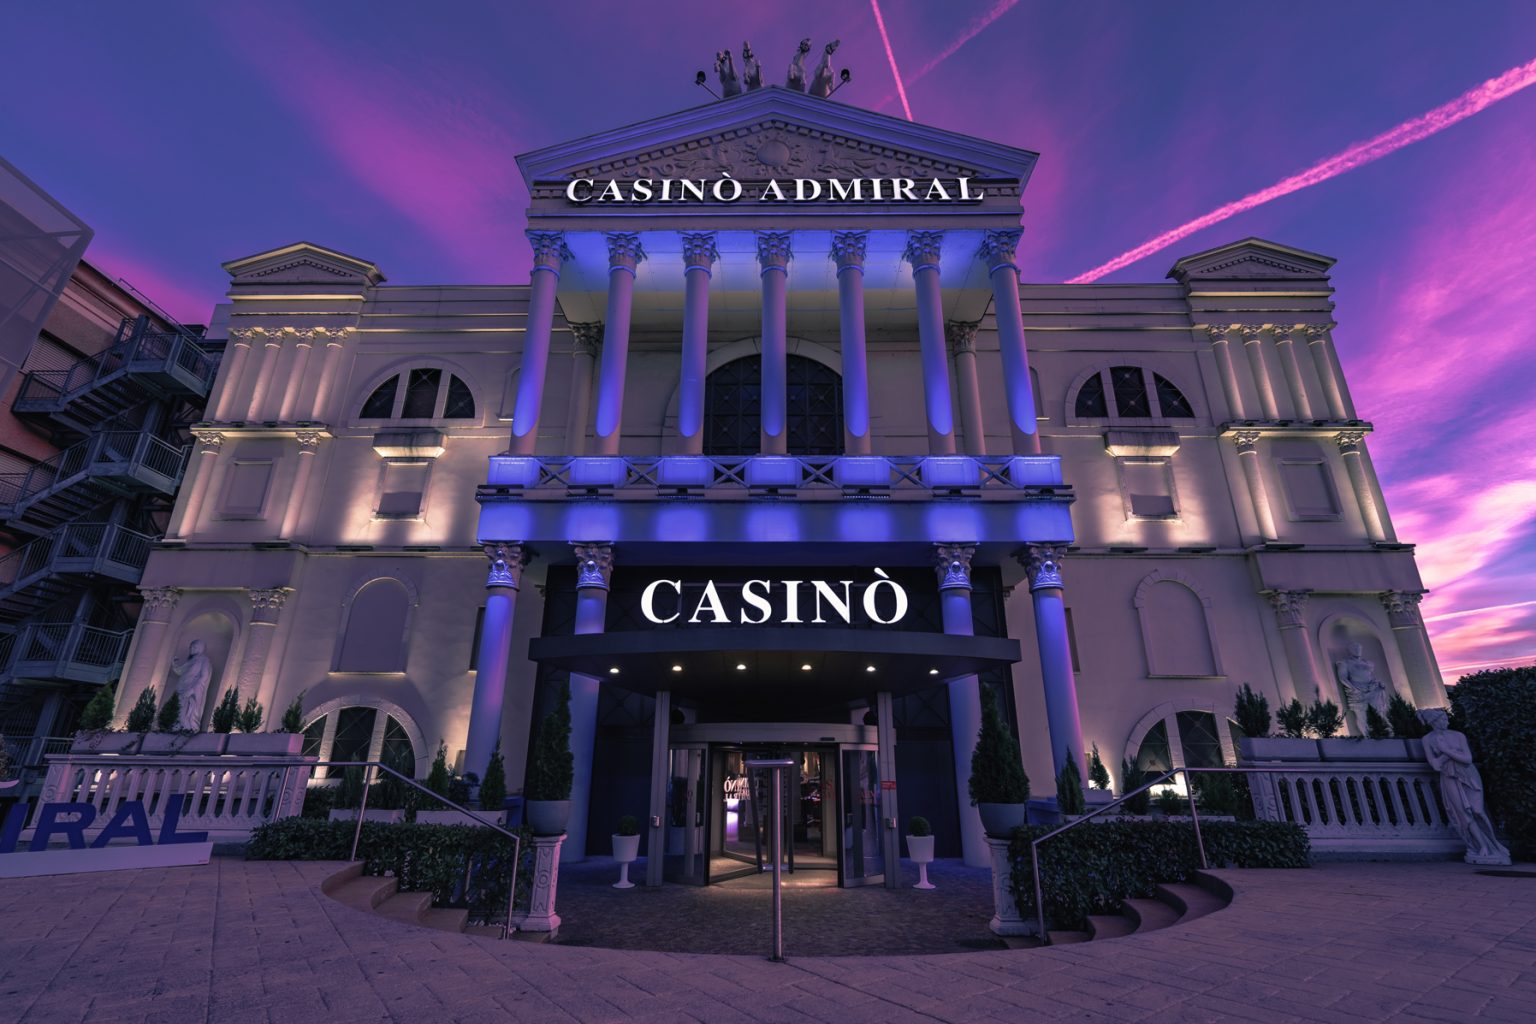 caesars casino free slots online